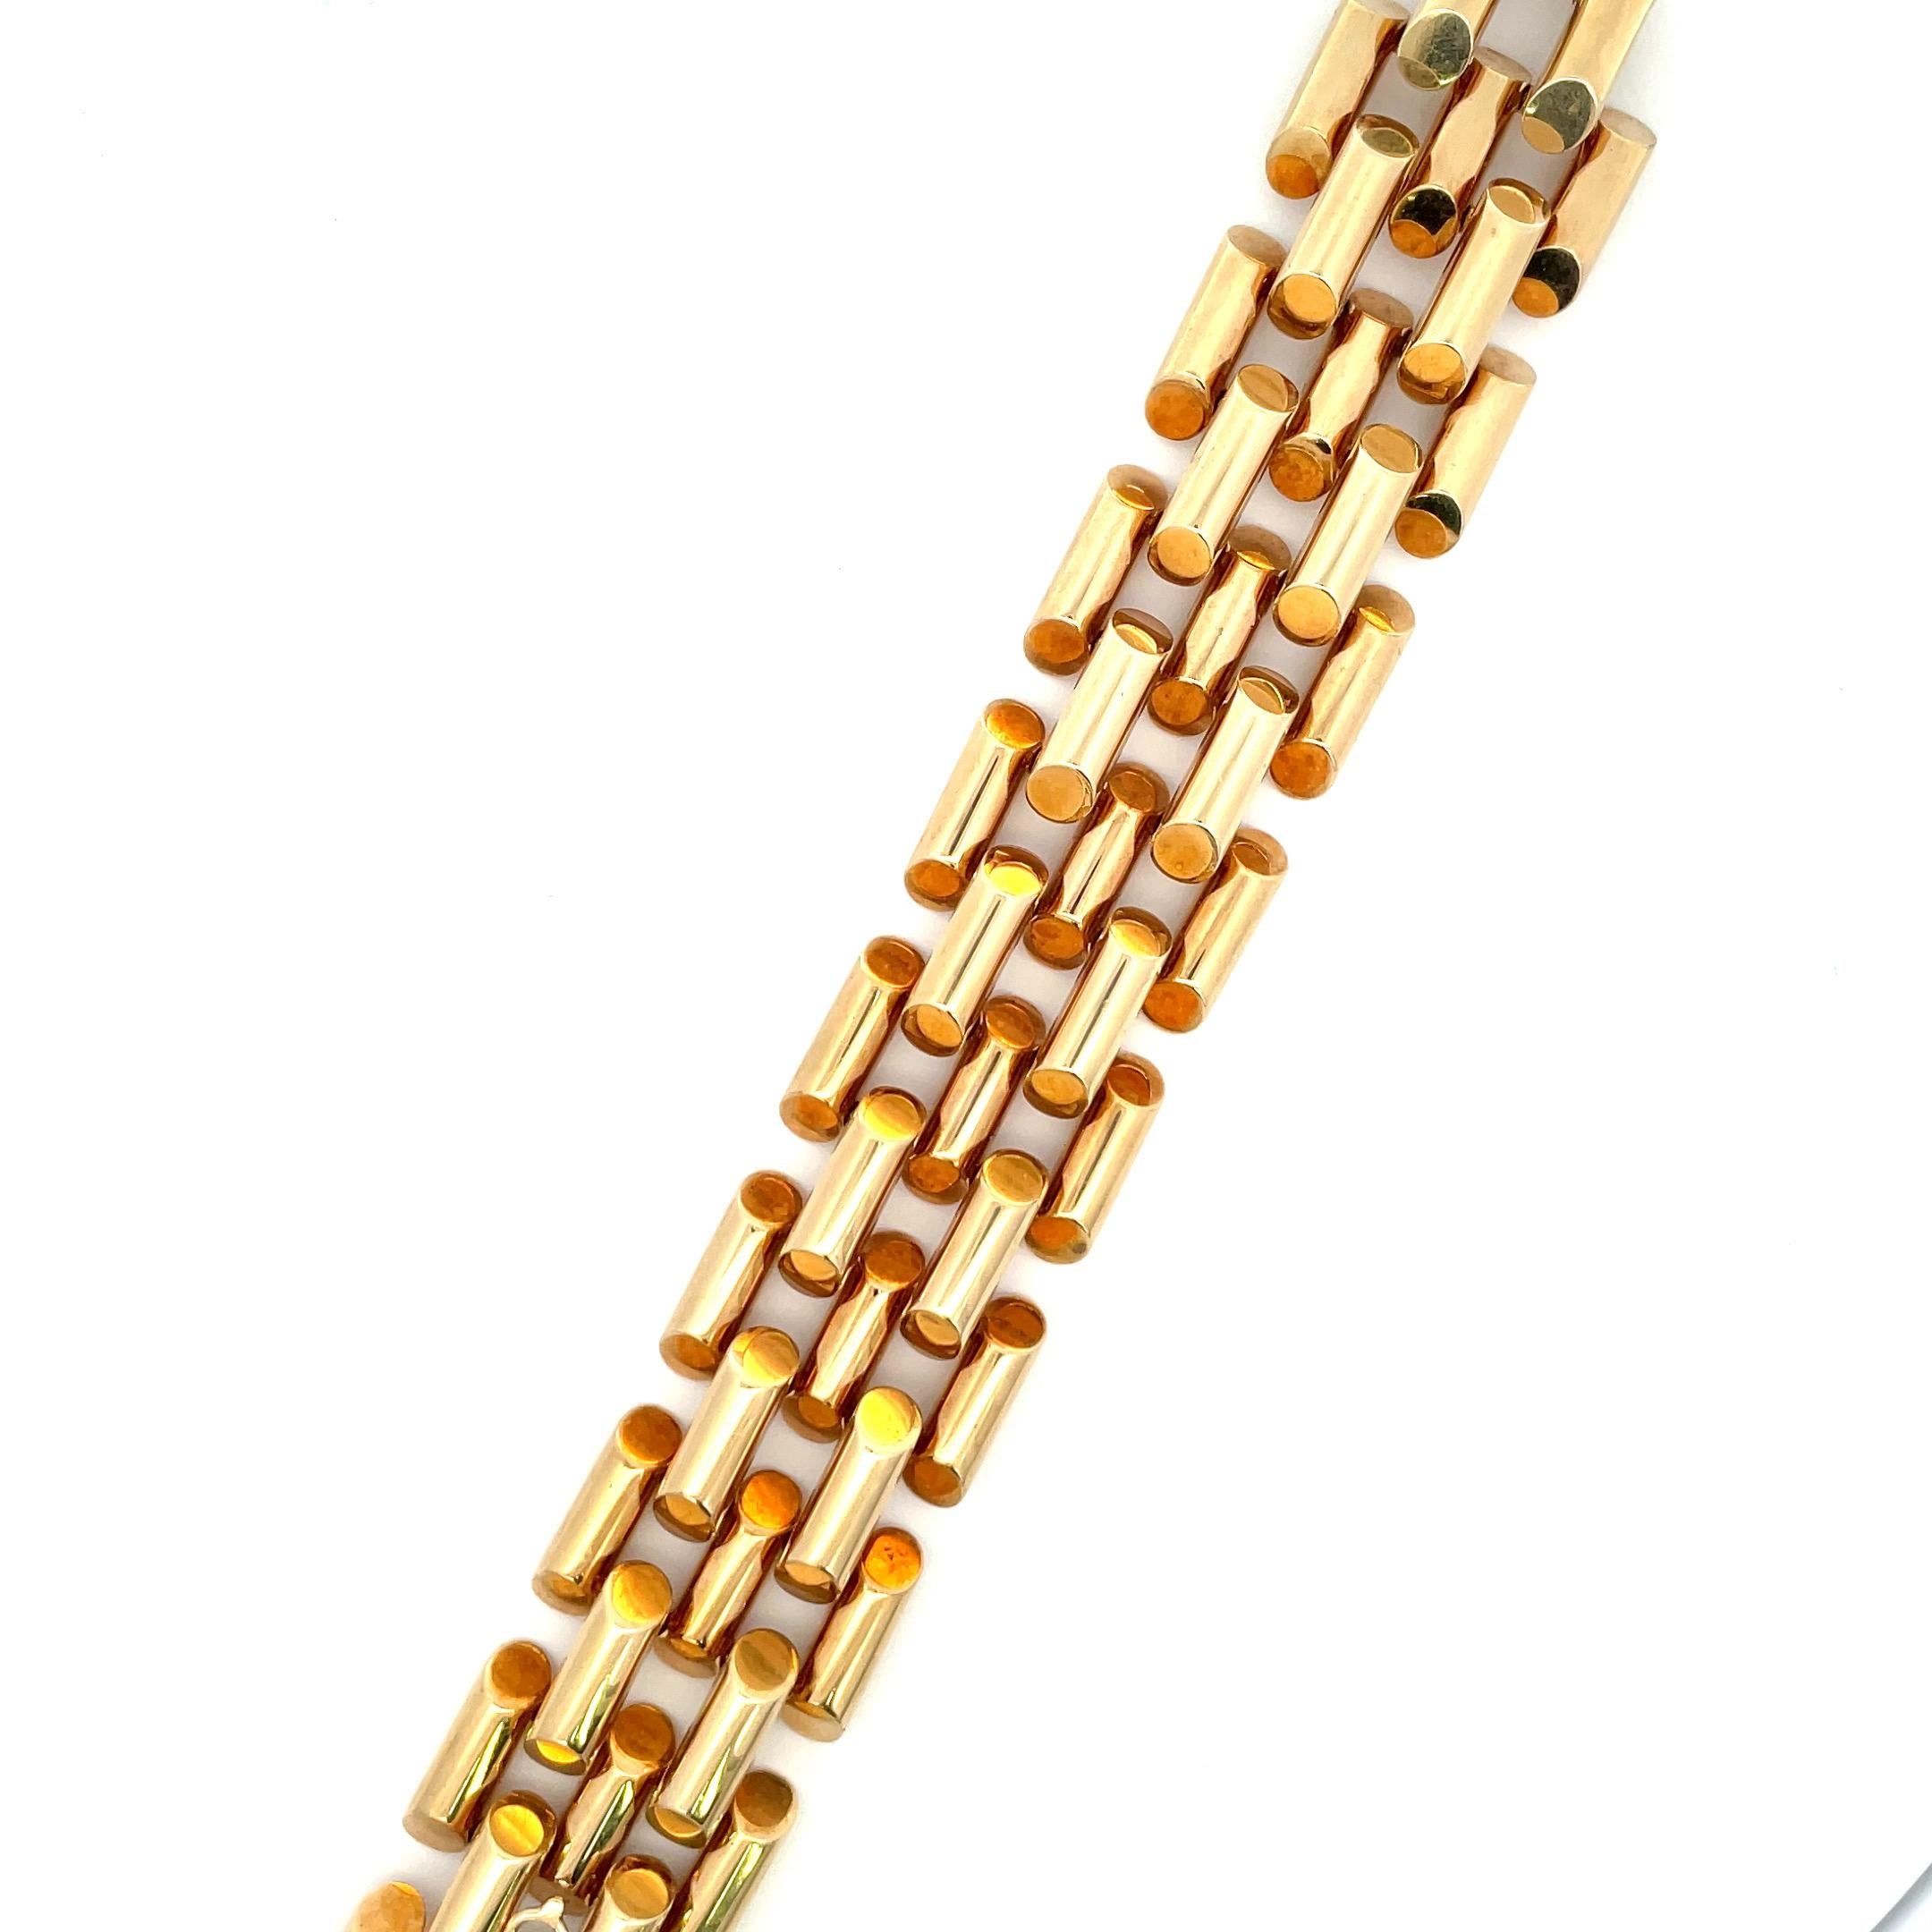 amega gold bracelet price